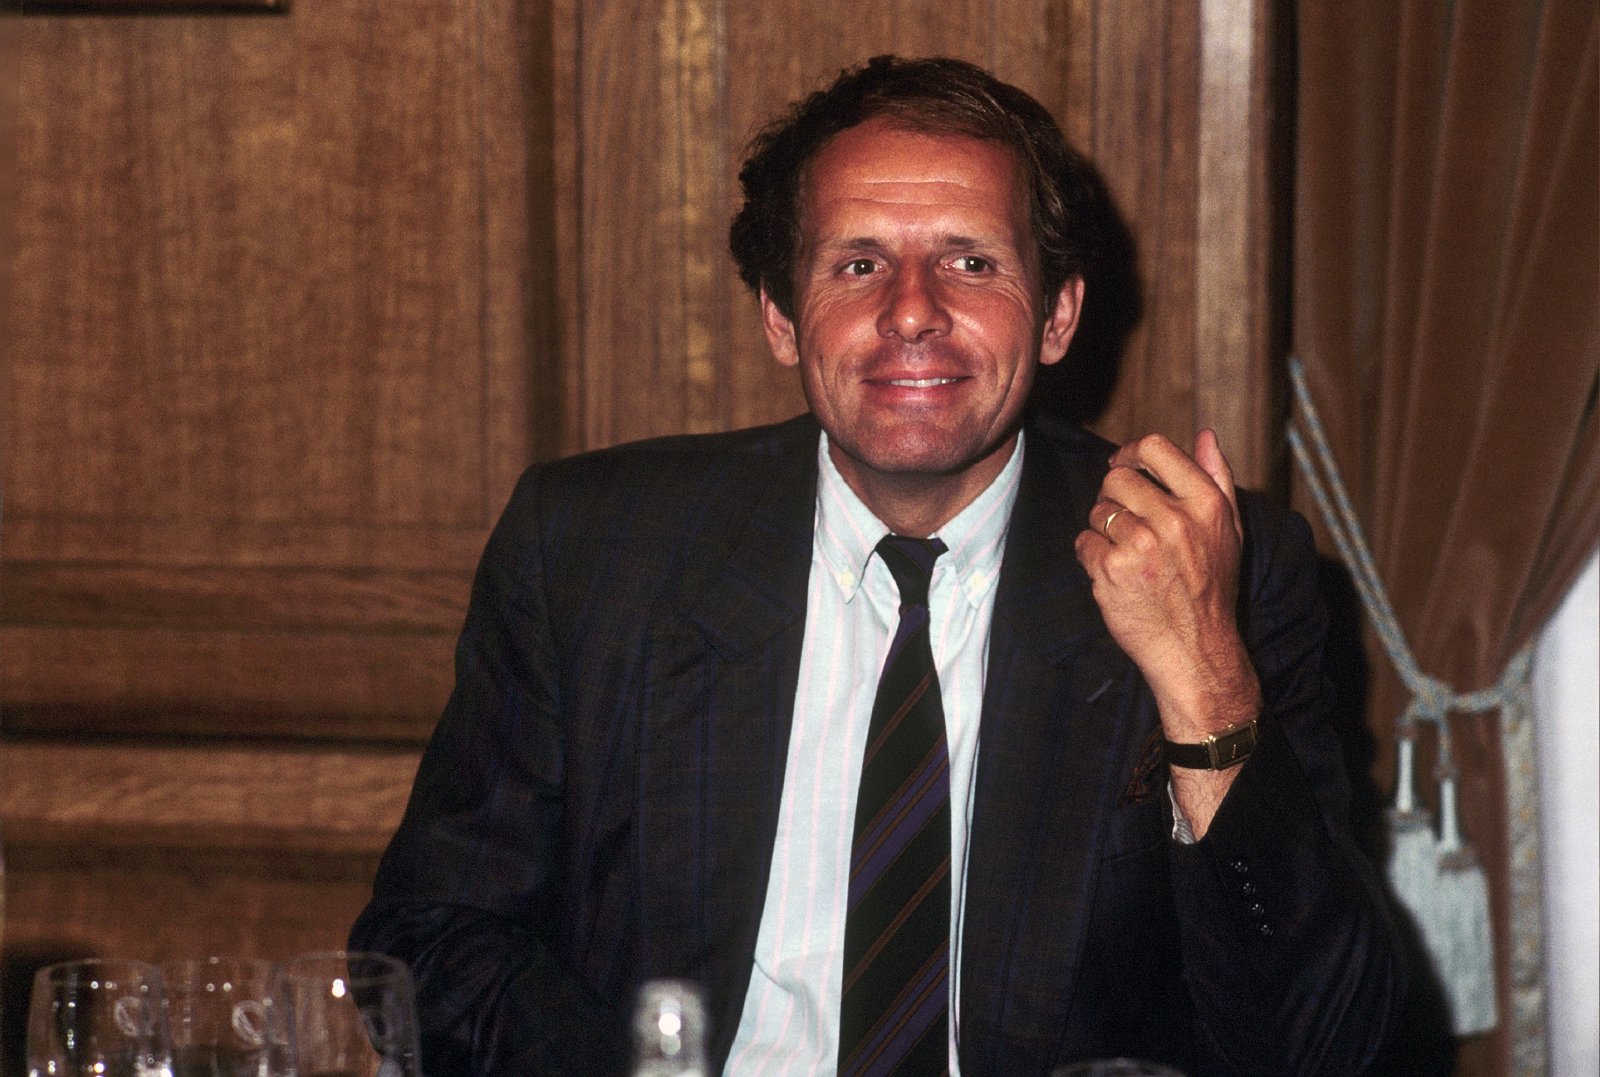 Le journaliste Patrick Poivre d'Arvor lors d'un dîner en 1989, France. | Photo : Getty Images